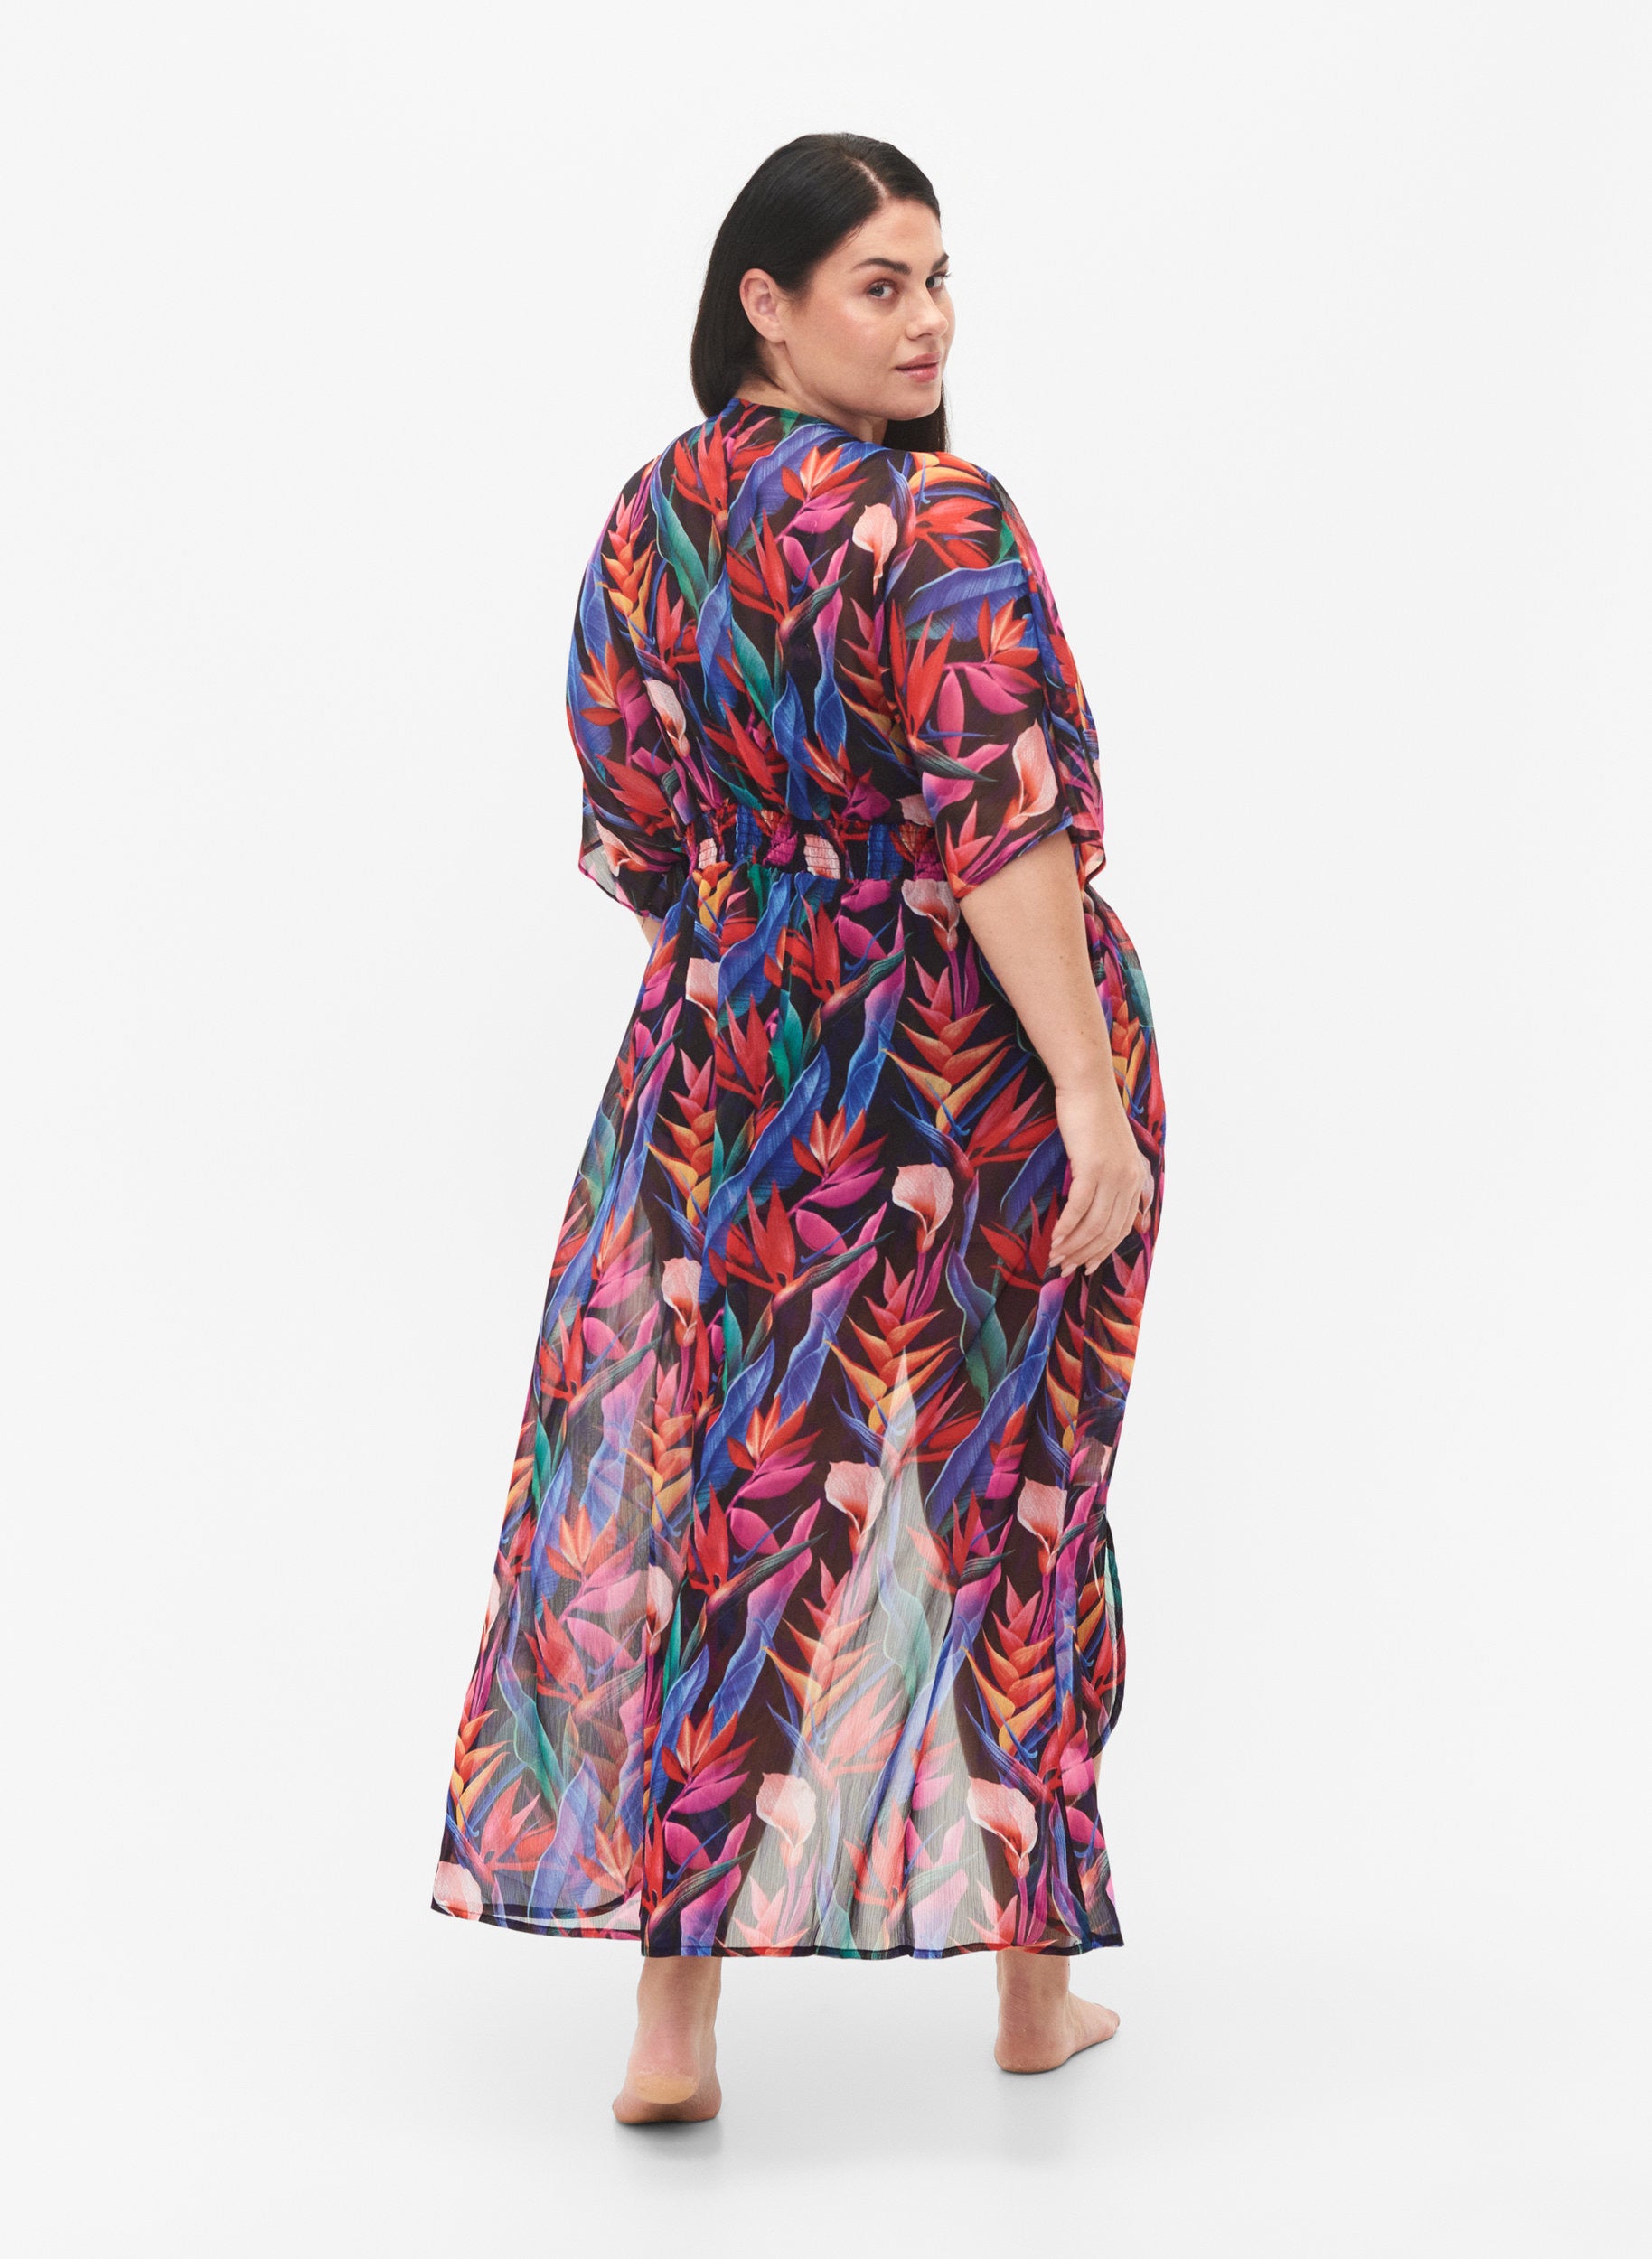 ZiSWas Kimono